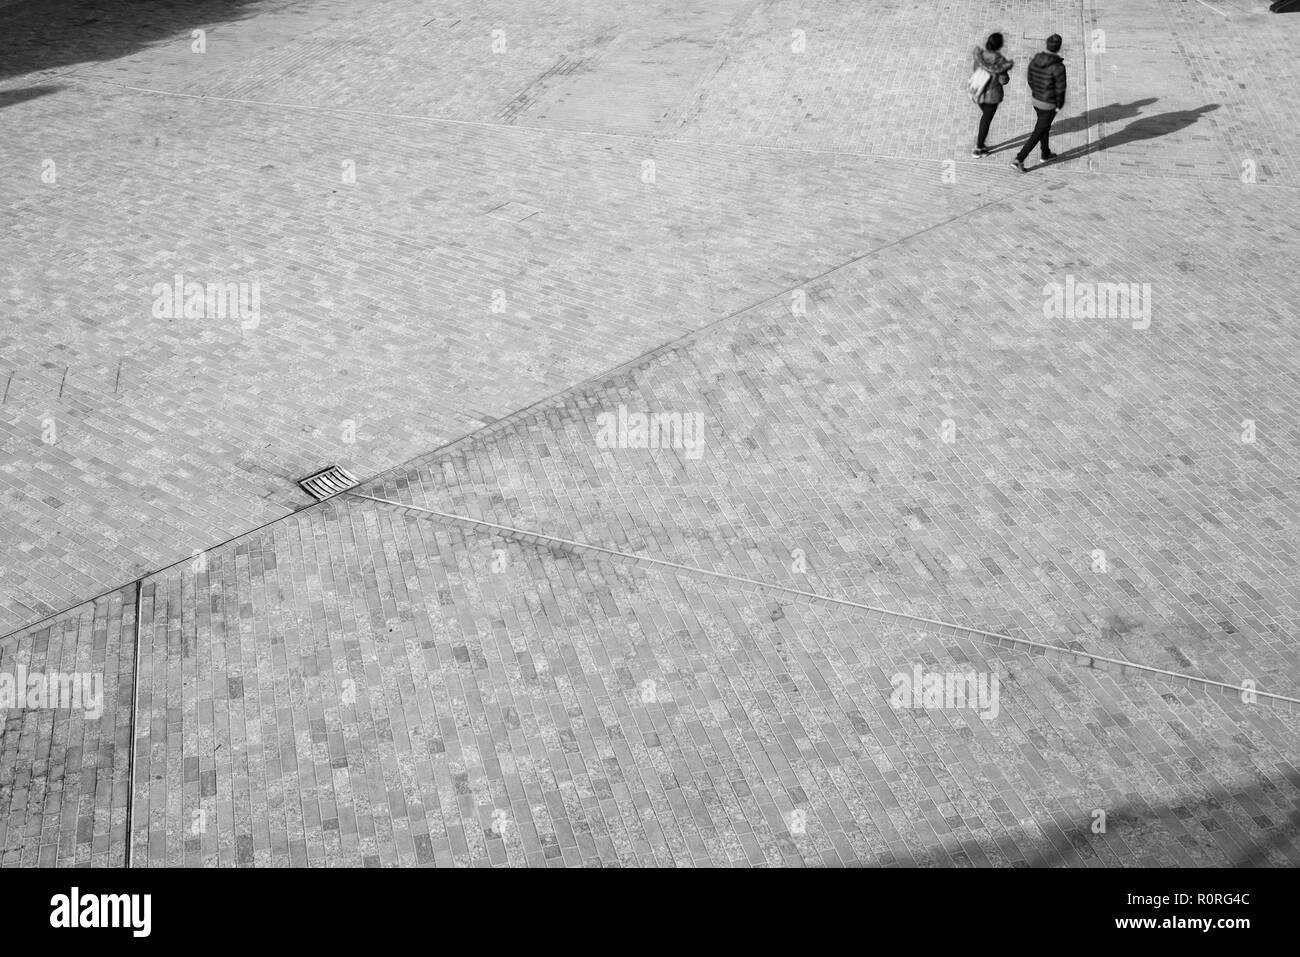 Sfocato irriconoscibile la gente da sopra a piedi su uno spazio aperto in piazza con le ombre che sporge sul pavimento Foto Stock